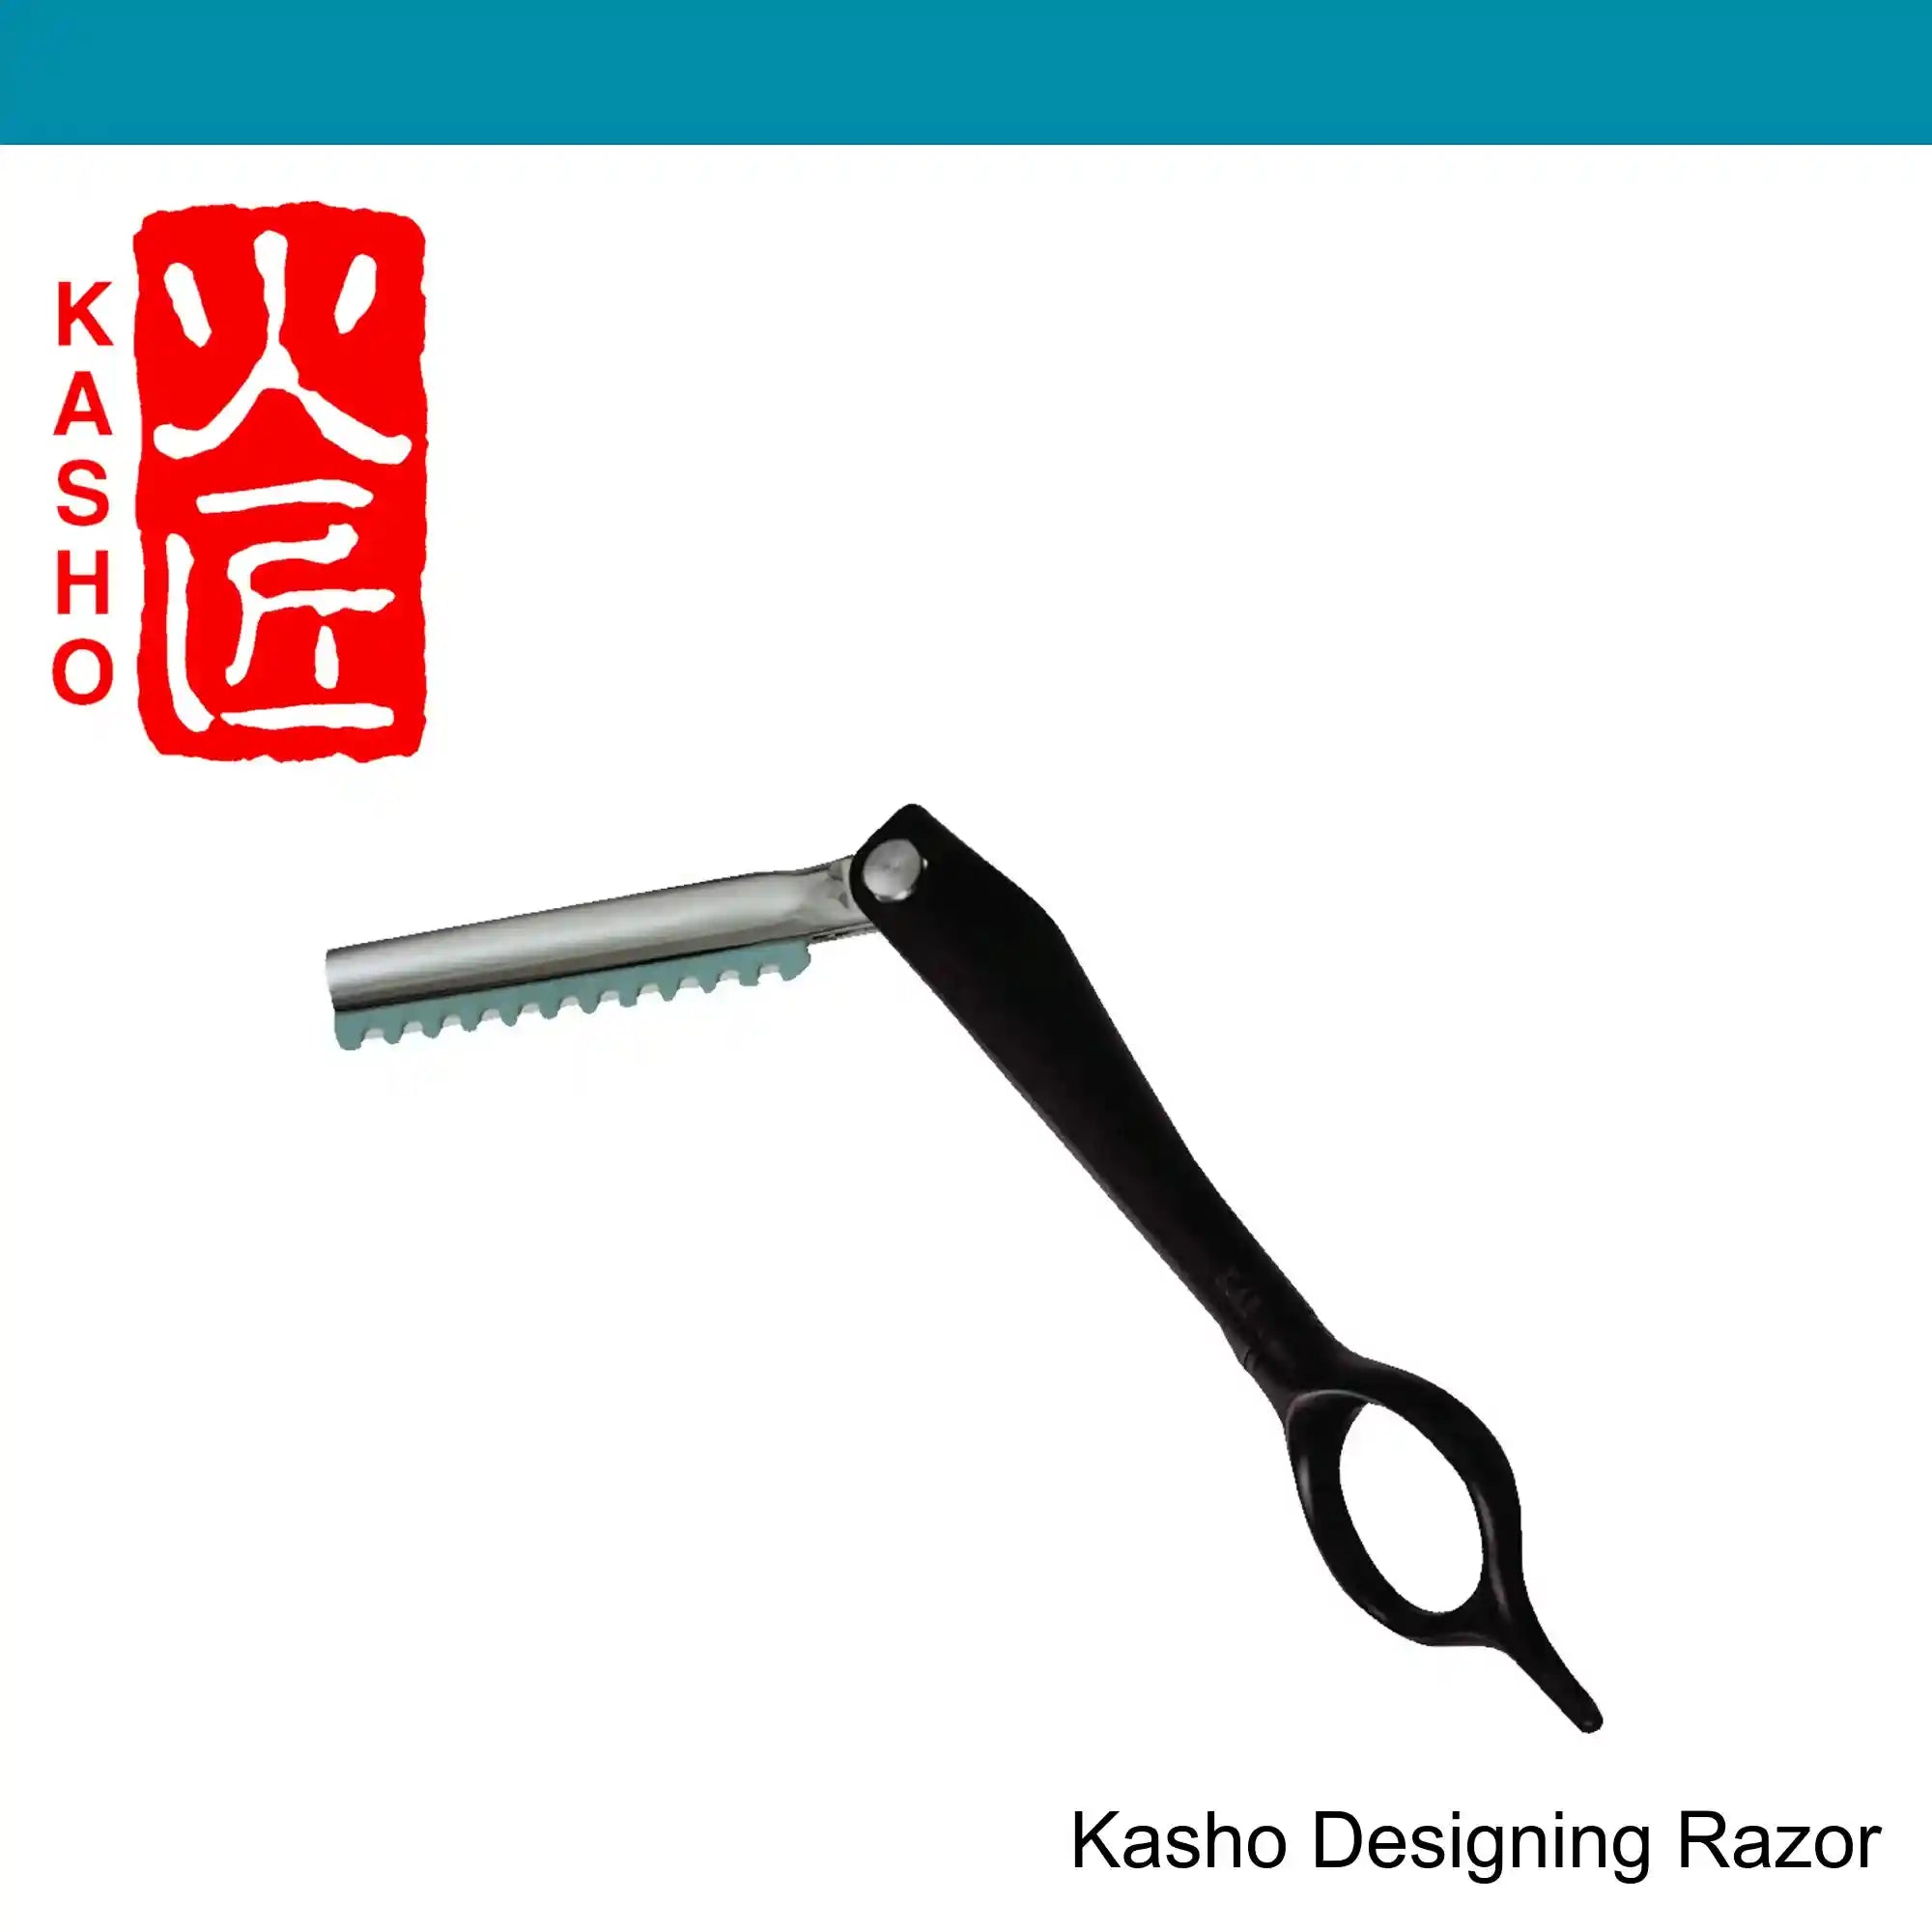 Kasho Designing Razor